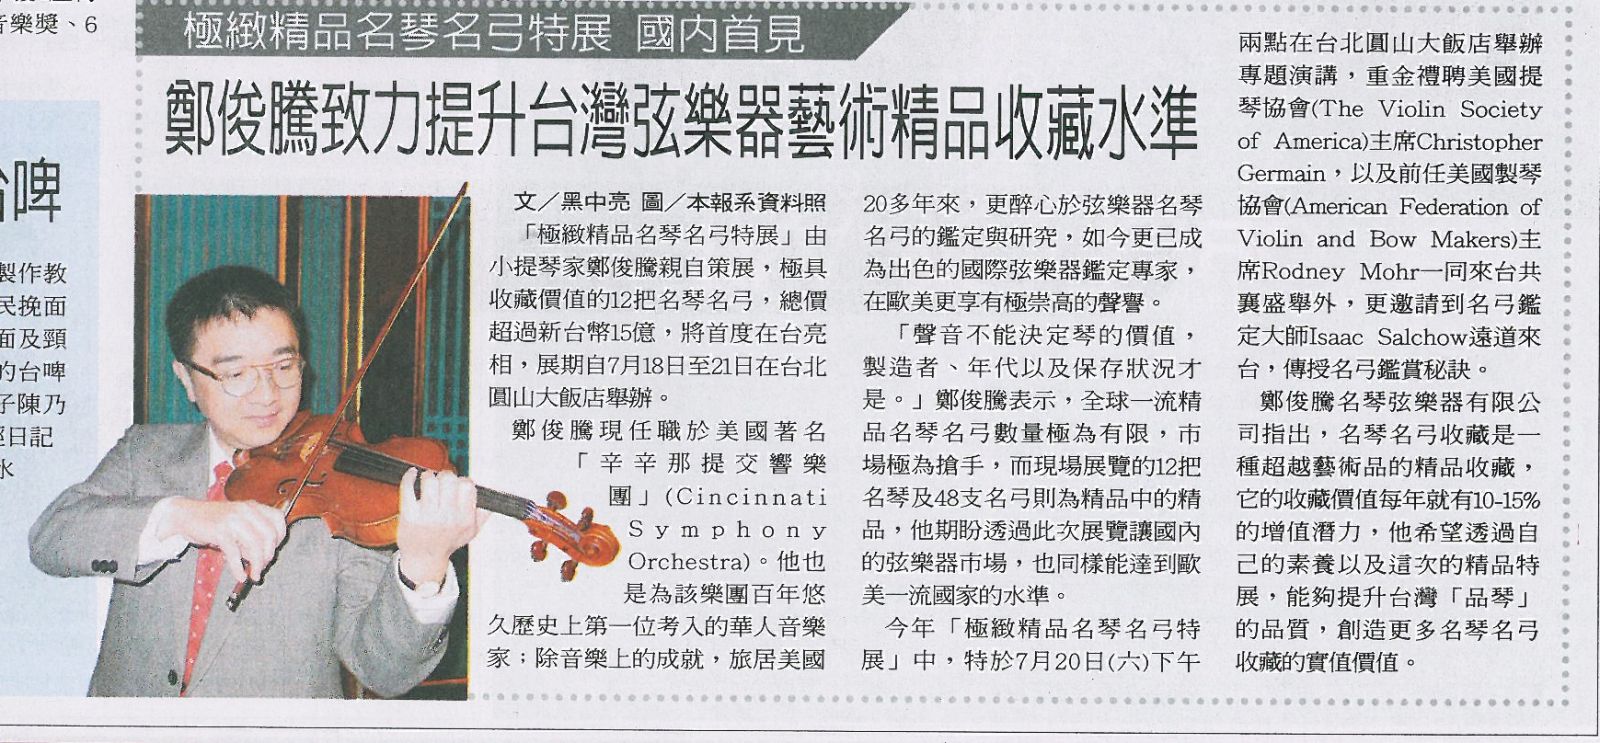 聯合報 鄭俊騰 致力提升弦樂器藝術精品收藏水準 孟橙策略行銷